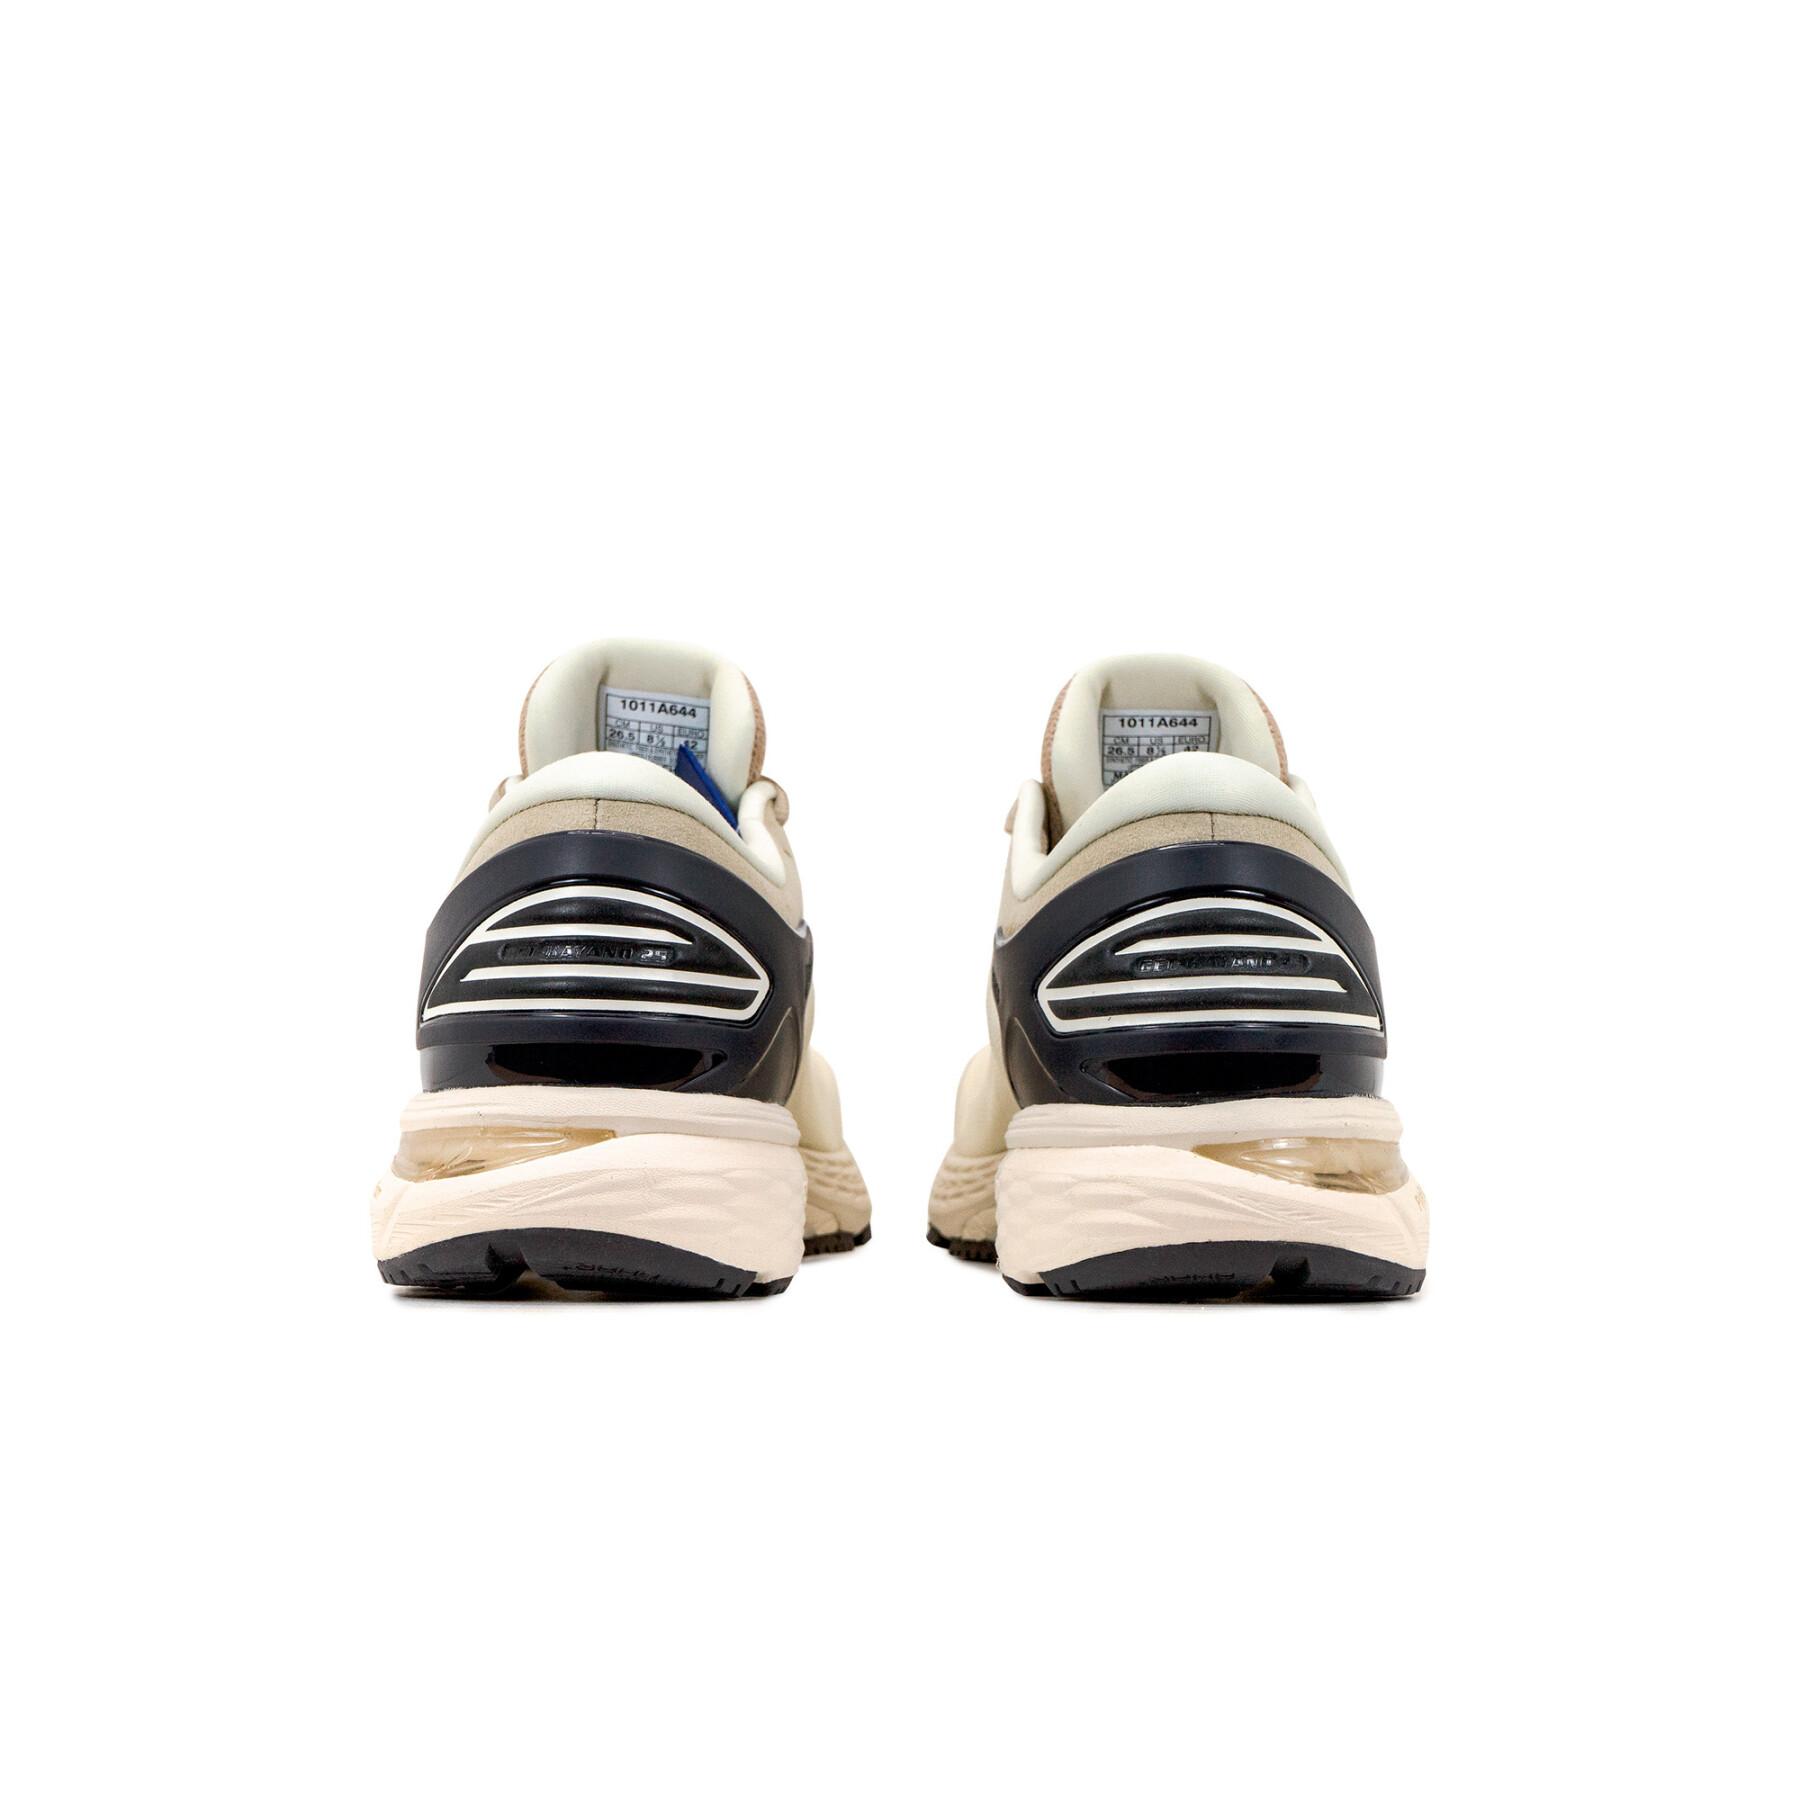 Chaussures de running Asics Gel-kayano 25